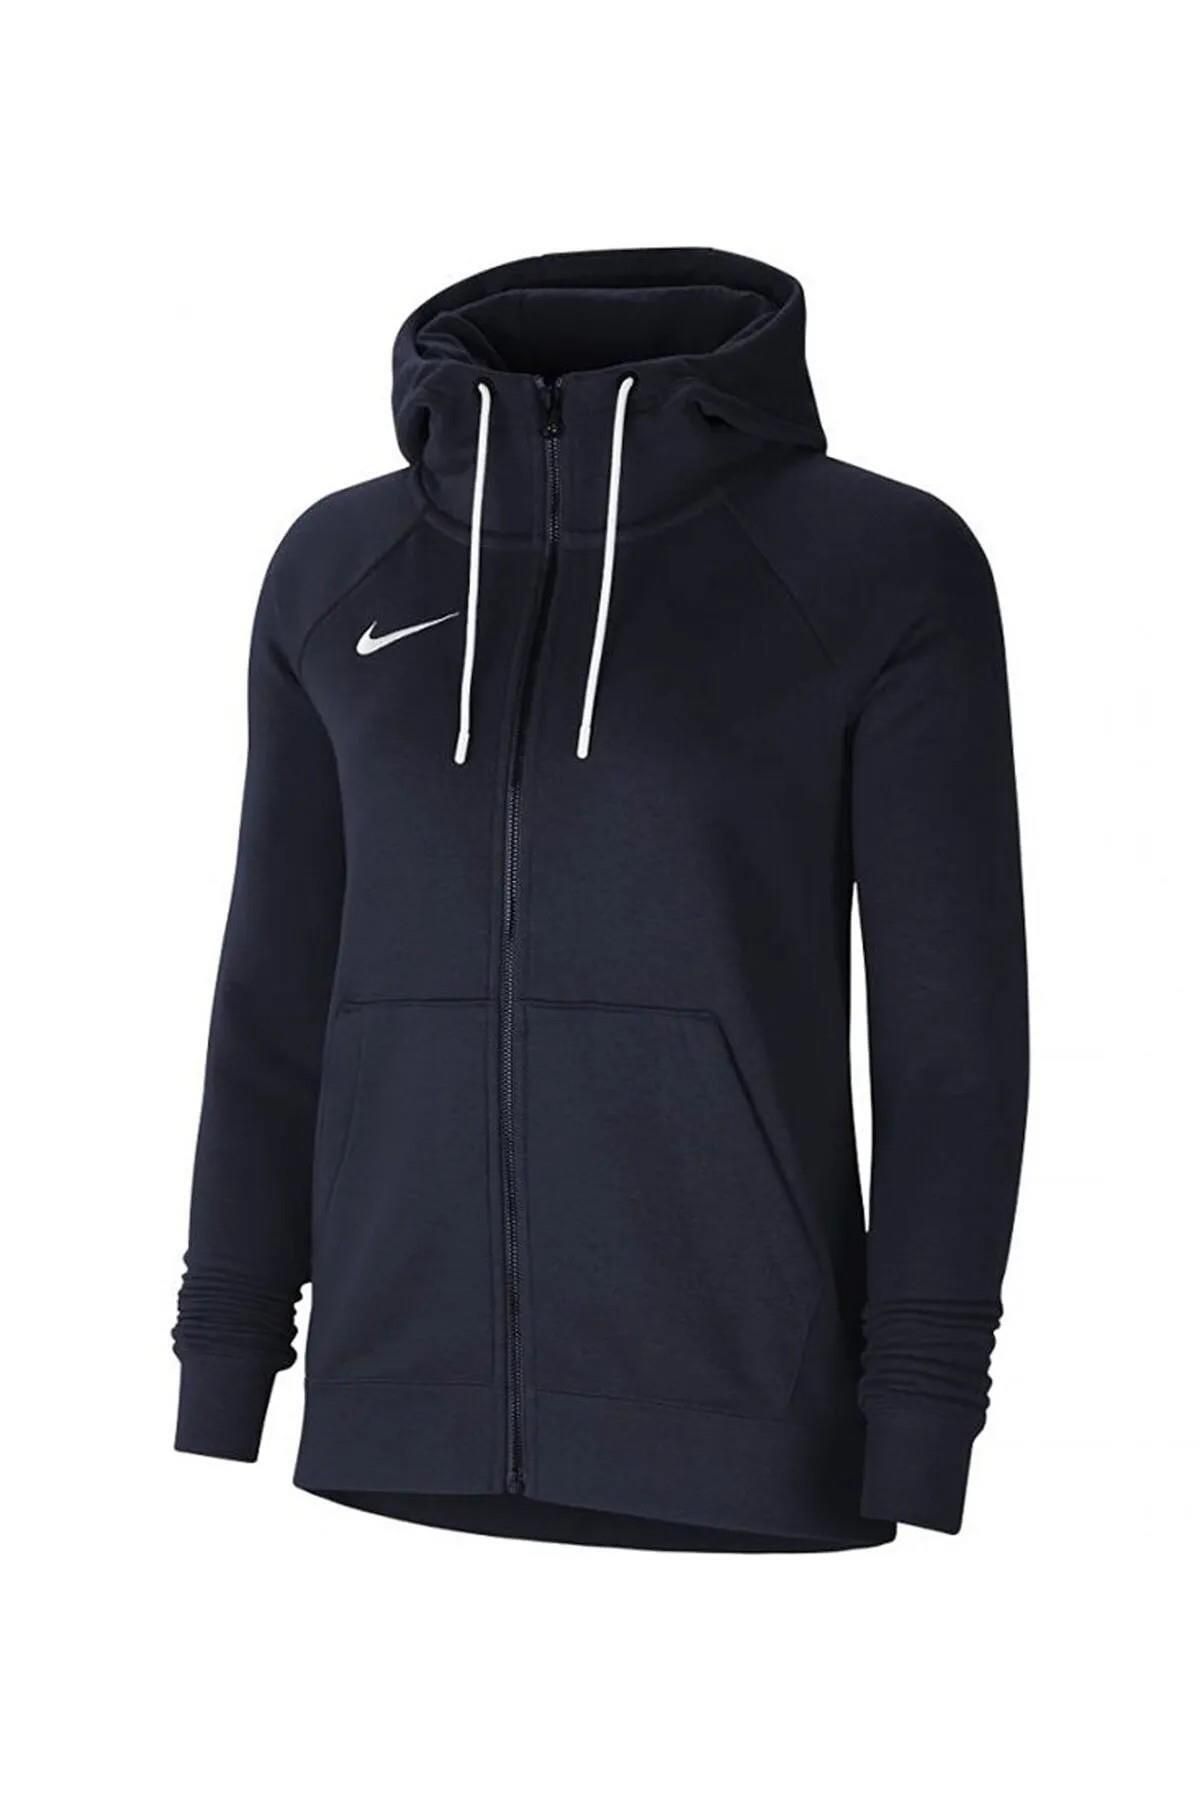 Nike Cw6955-451 W Nk Flc Park20 Fz Kadın Sweatshirt